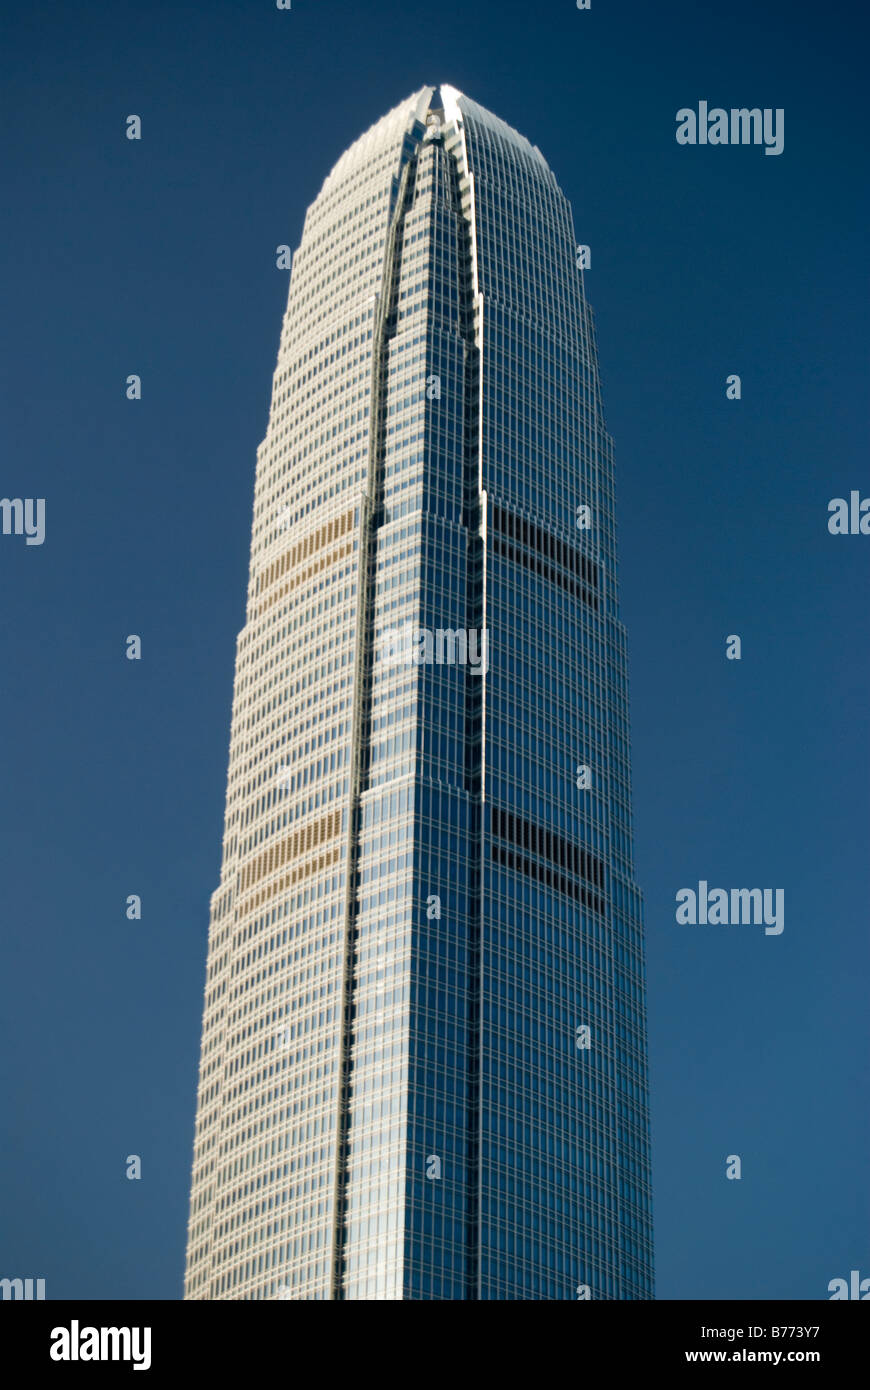 Zwei IFC Tower Building, Exchange Square, Sheung Wan, Hong Kong Island, Hongkong, Volksrepublik China Stockfoto